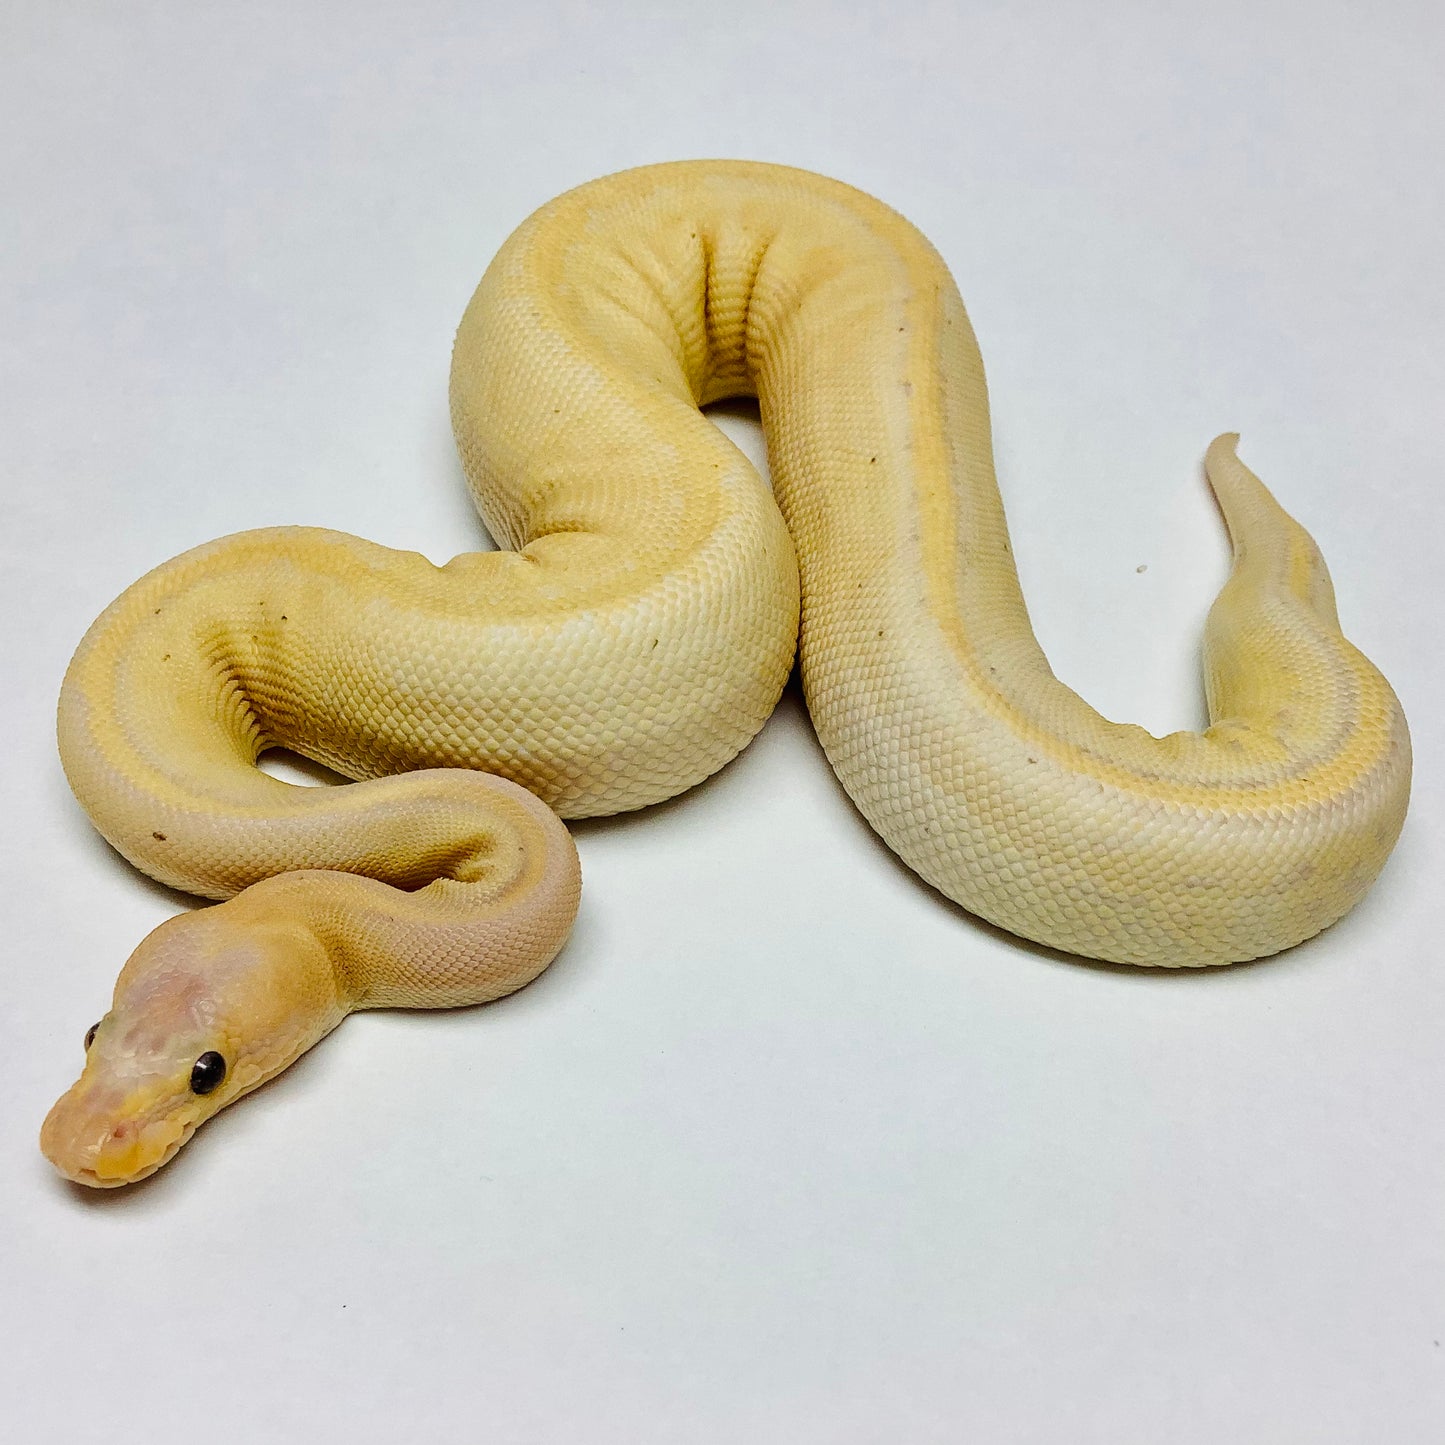 Banana Camo Ball Python- Male #2021M01-1